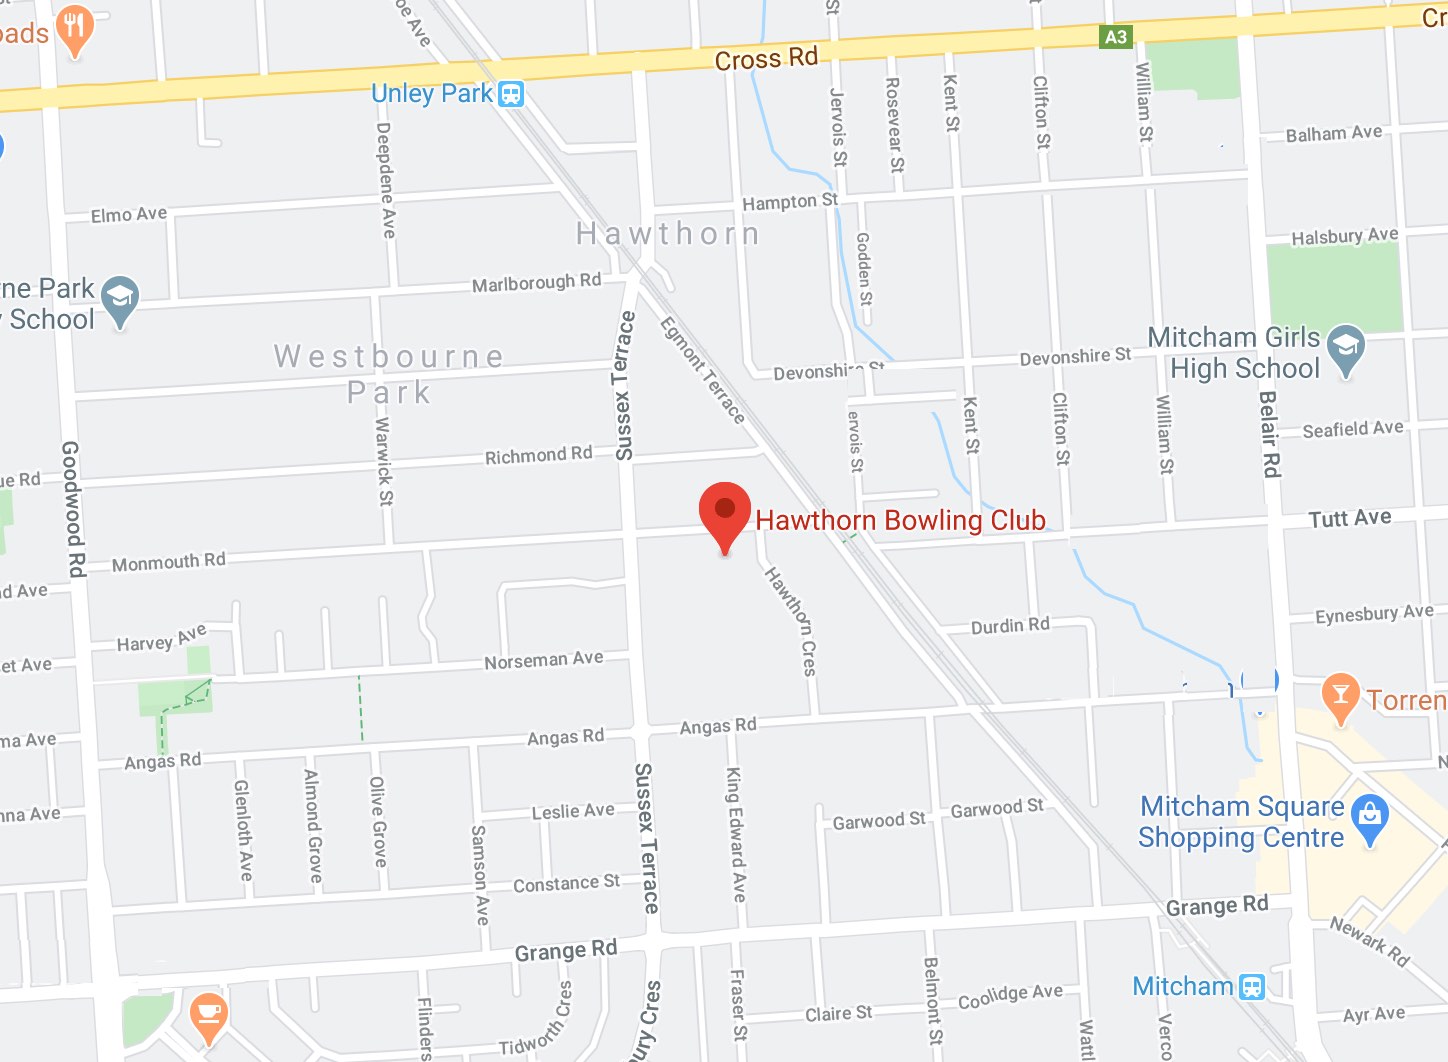 Location of Hawthorn Bowling Club